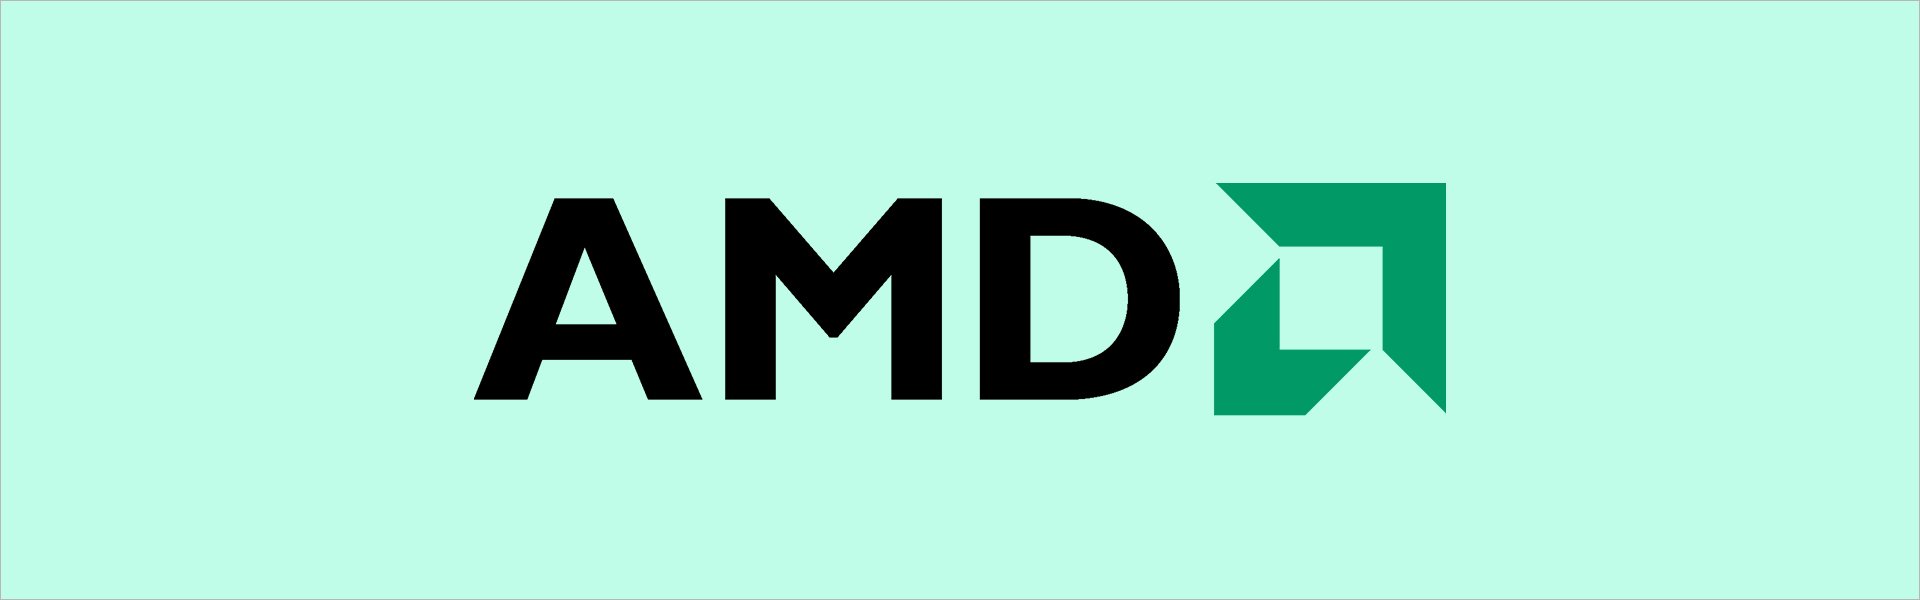 AMD Ryzen 5 2600X 3.6GHz, 16MB, BOX Wraith Spire (YD260XBCAFBOX) AMD